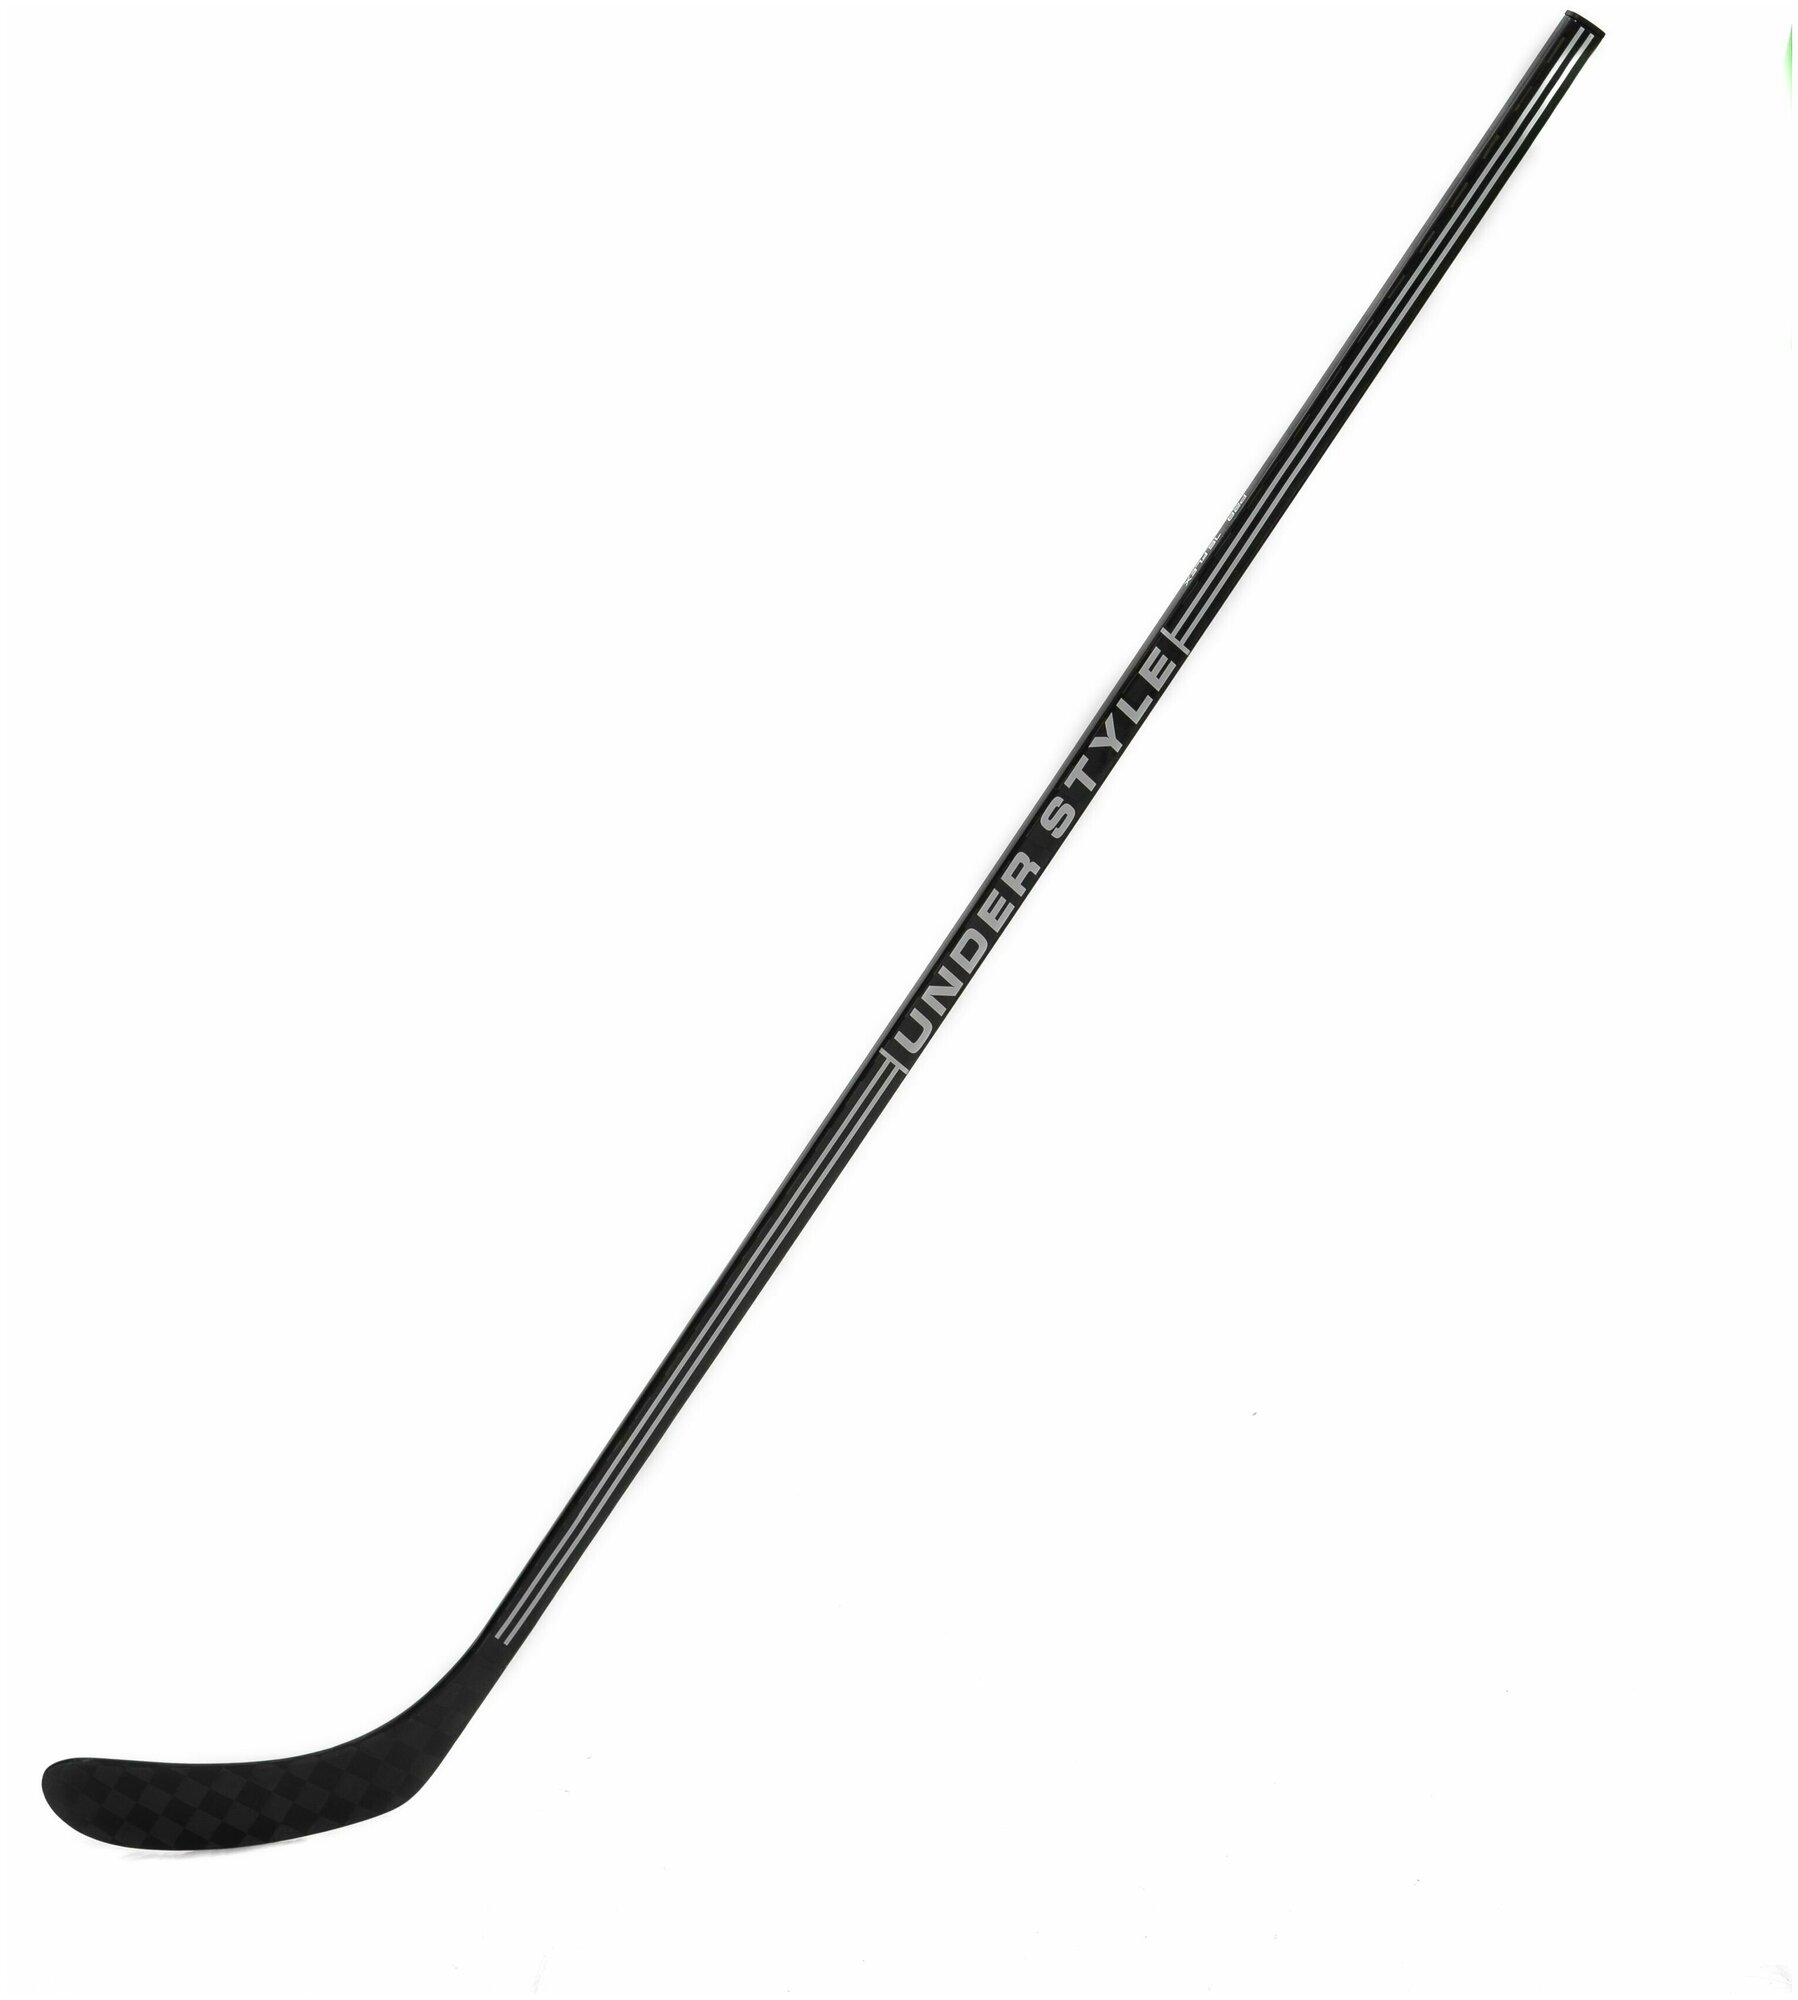 Хоккейная клюшка UNDER STYLE PRO Grip SR, Flex 80, P28, Правый хват